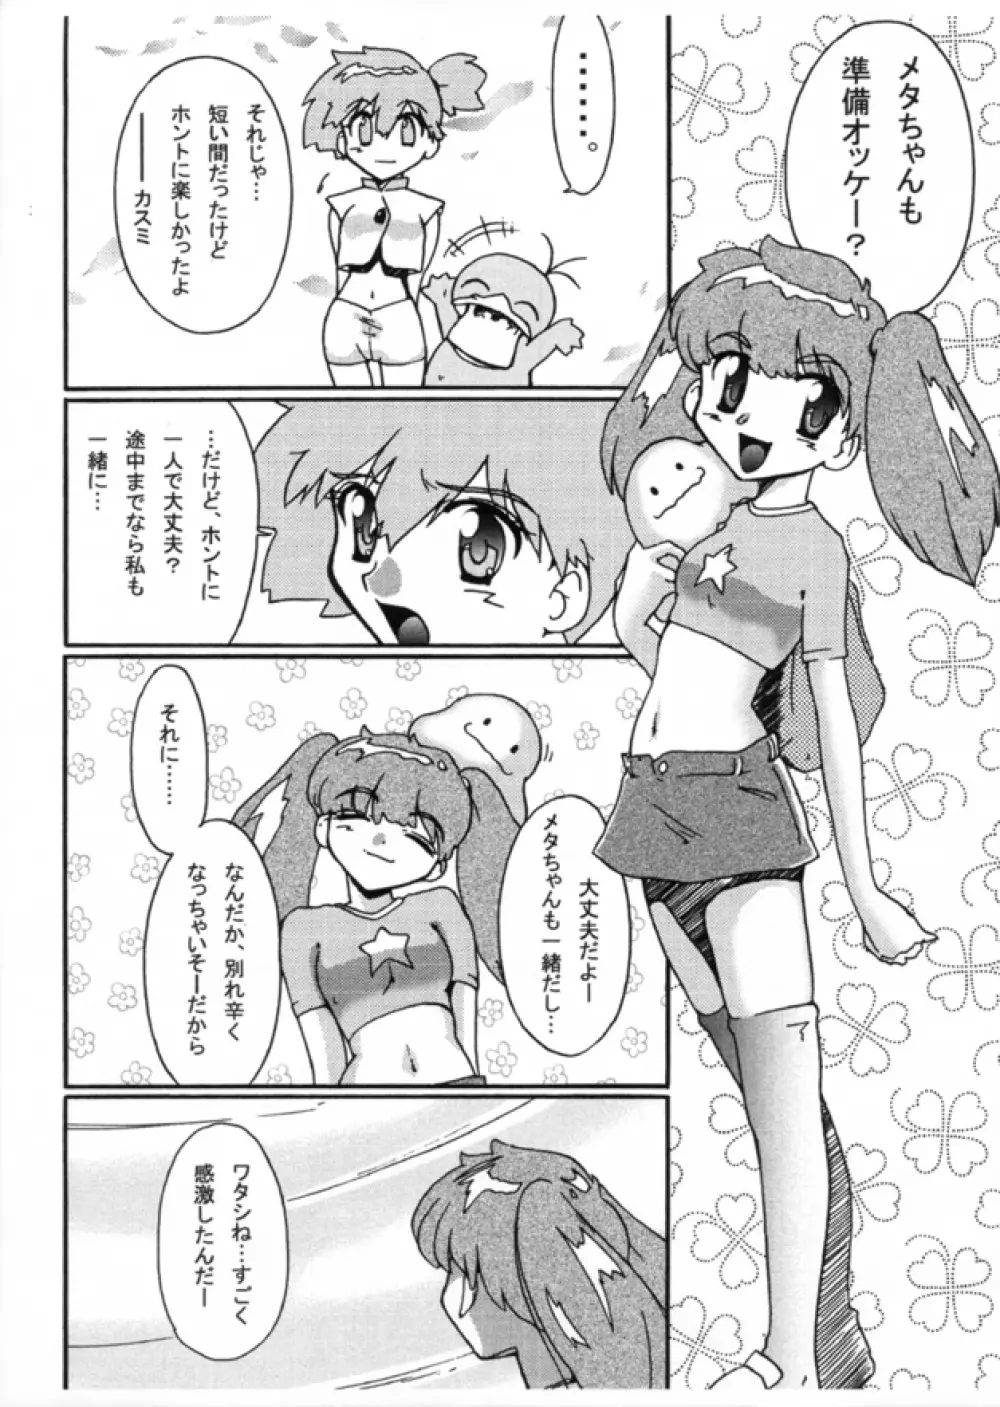 KASUMIX XPLOSION Kasumi Comic part5 39ページ